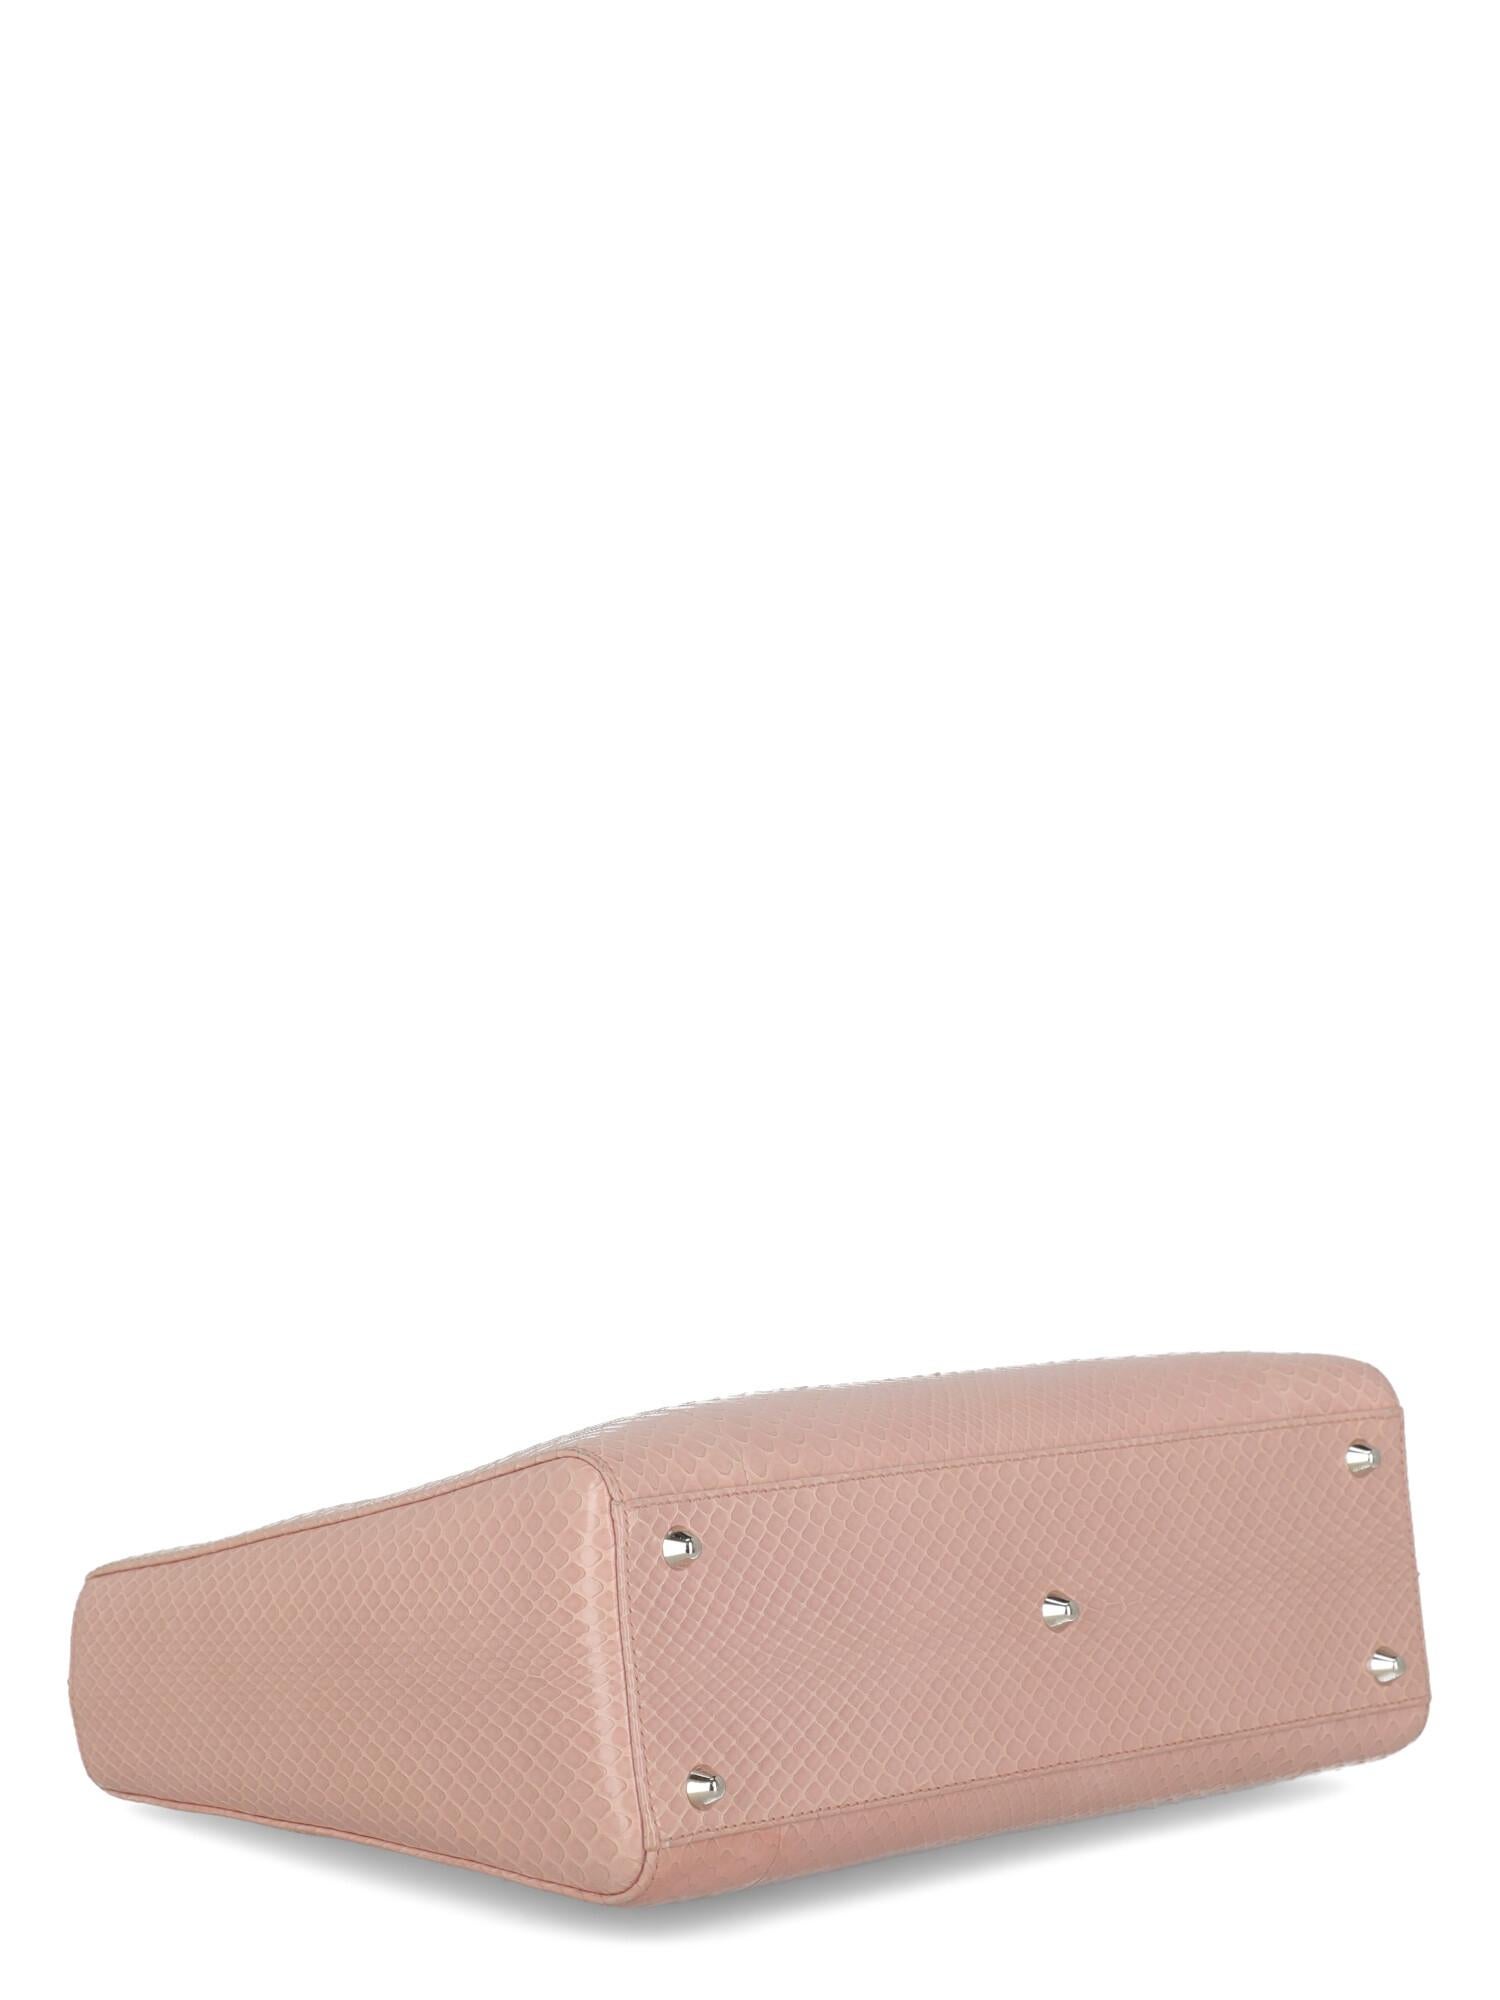 Beige Dior Women's Shoulder Bag Lady Dior Pink Leather For Sale